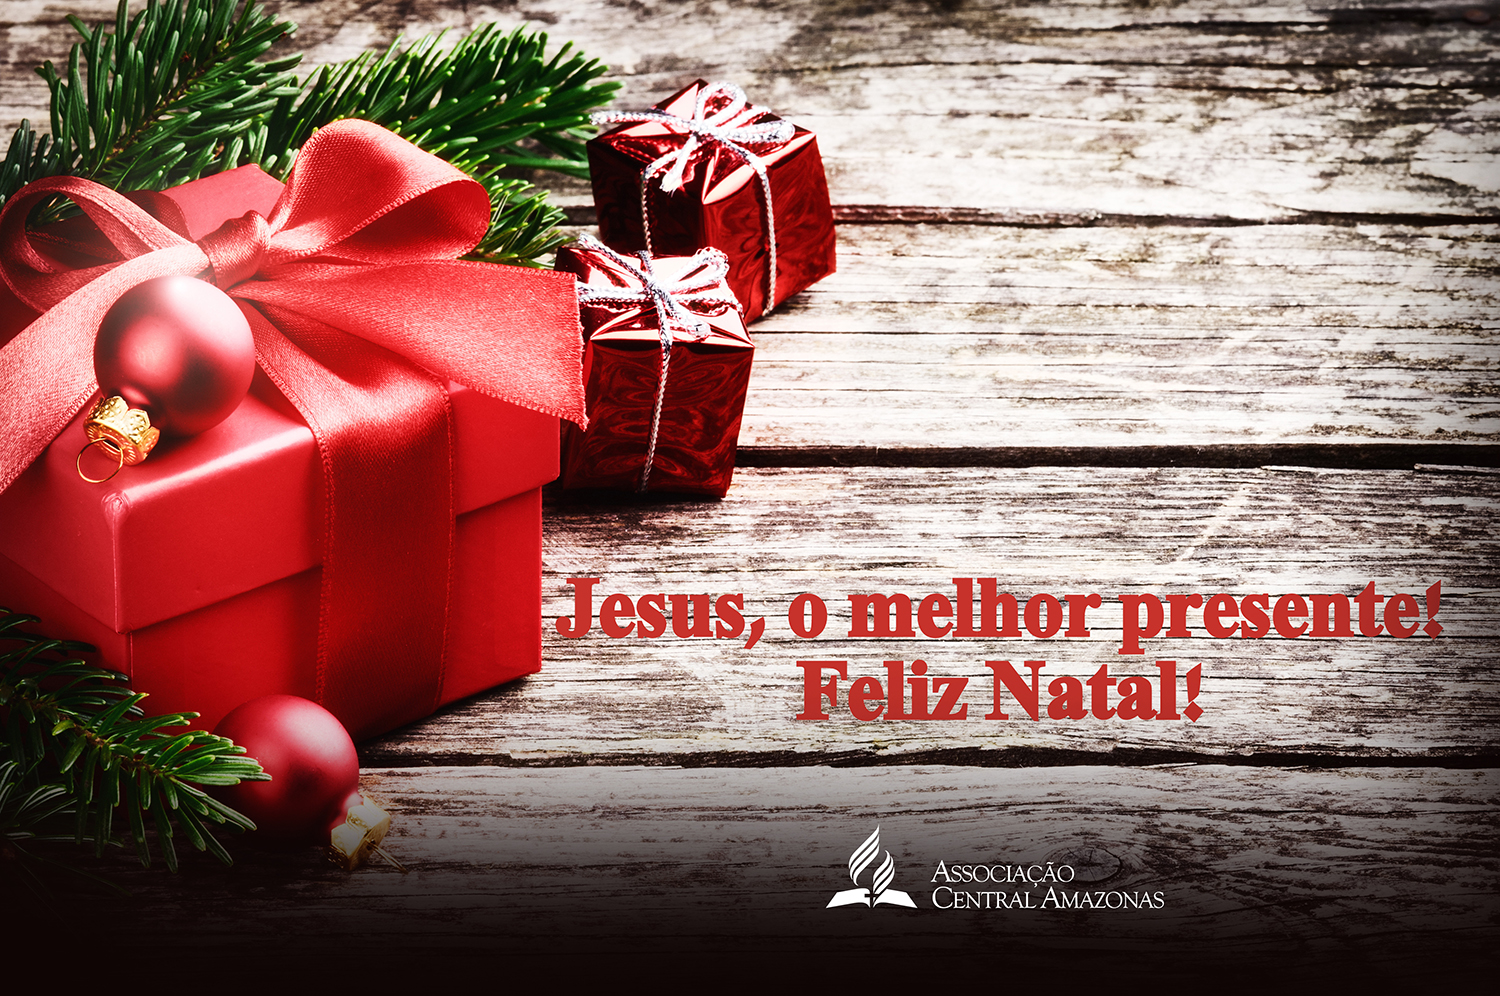 Chegou o Natal! - Notícias Adventistas